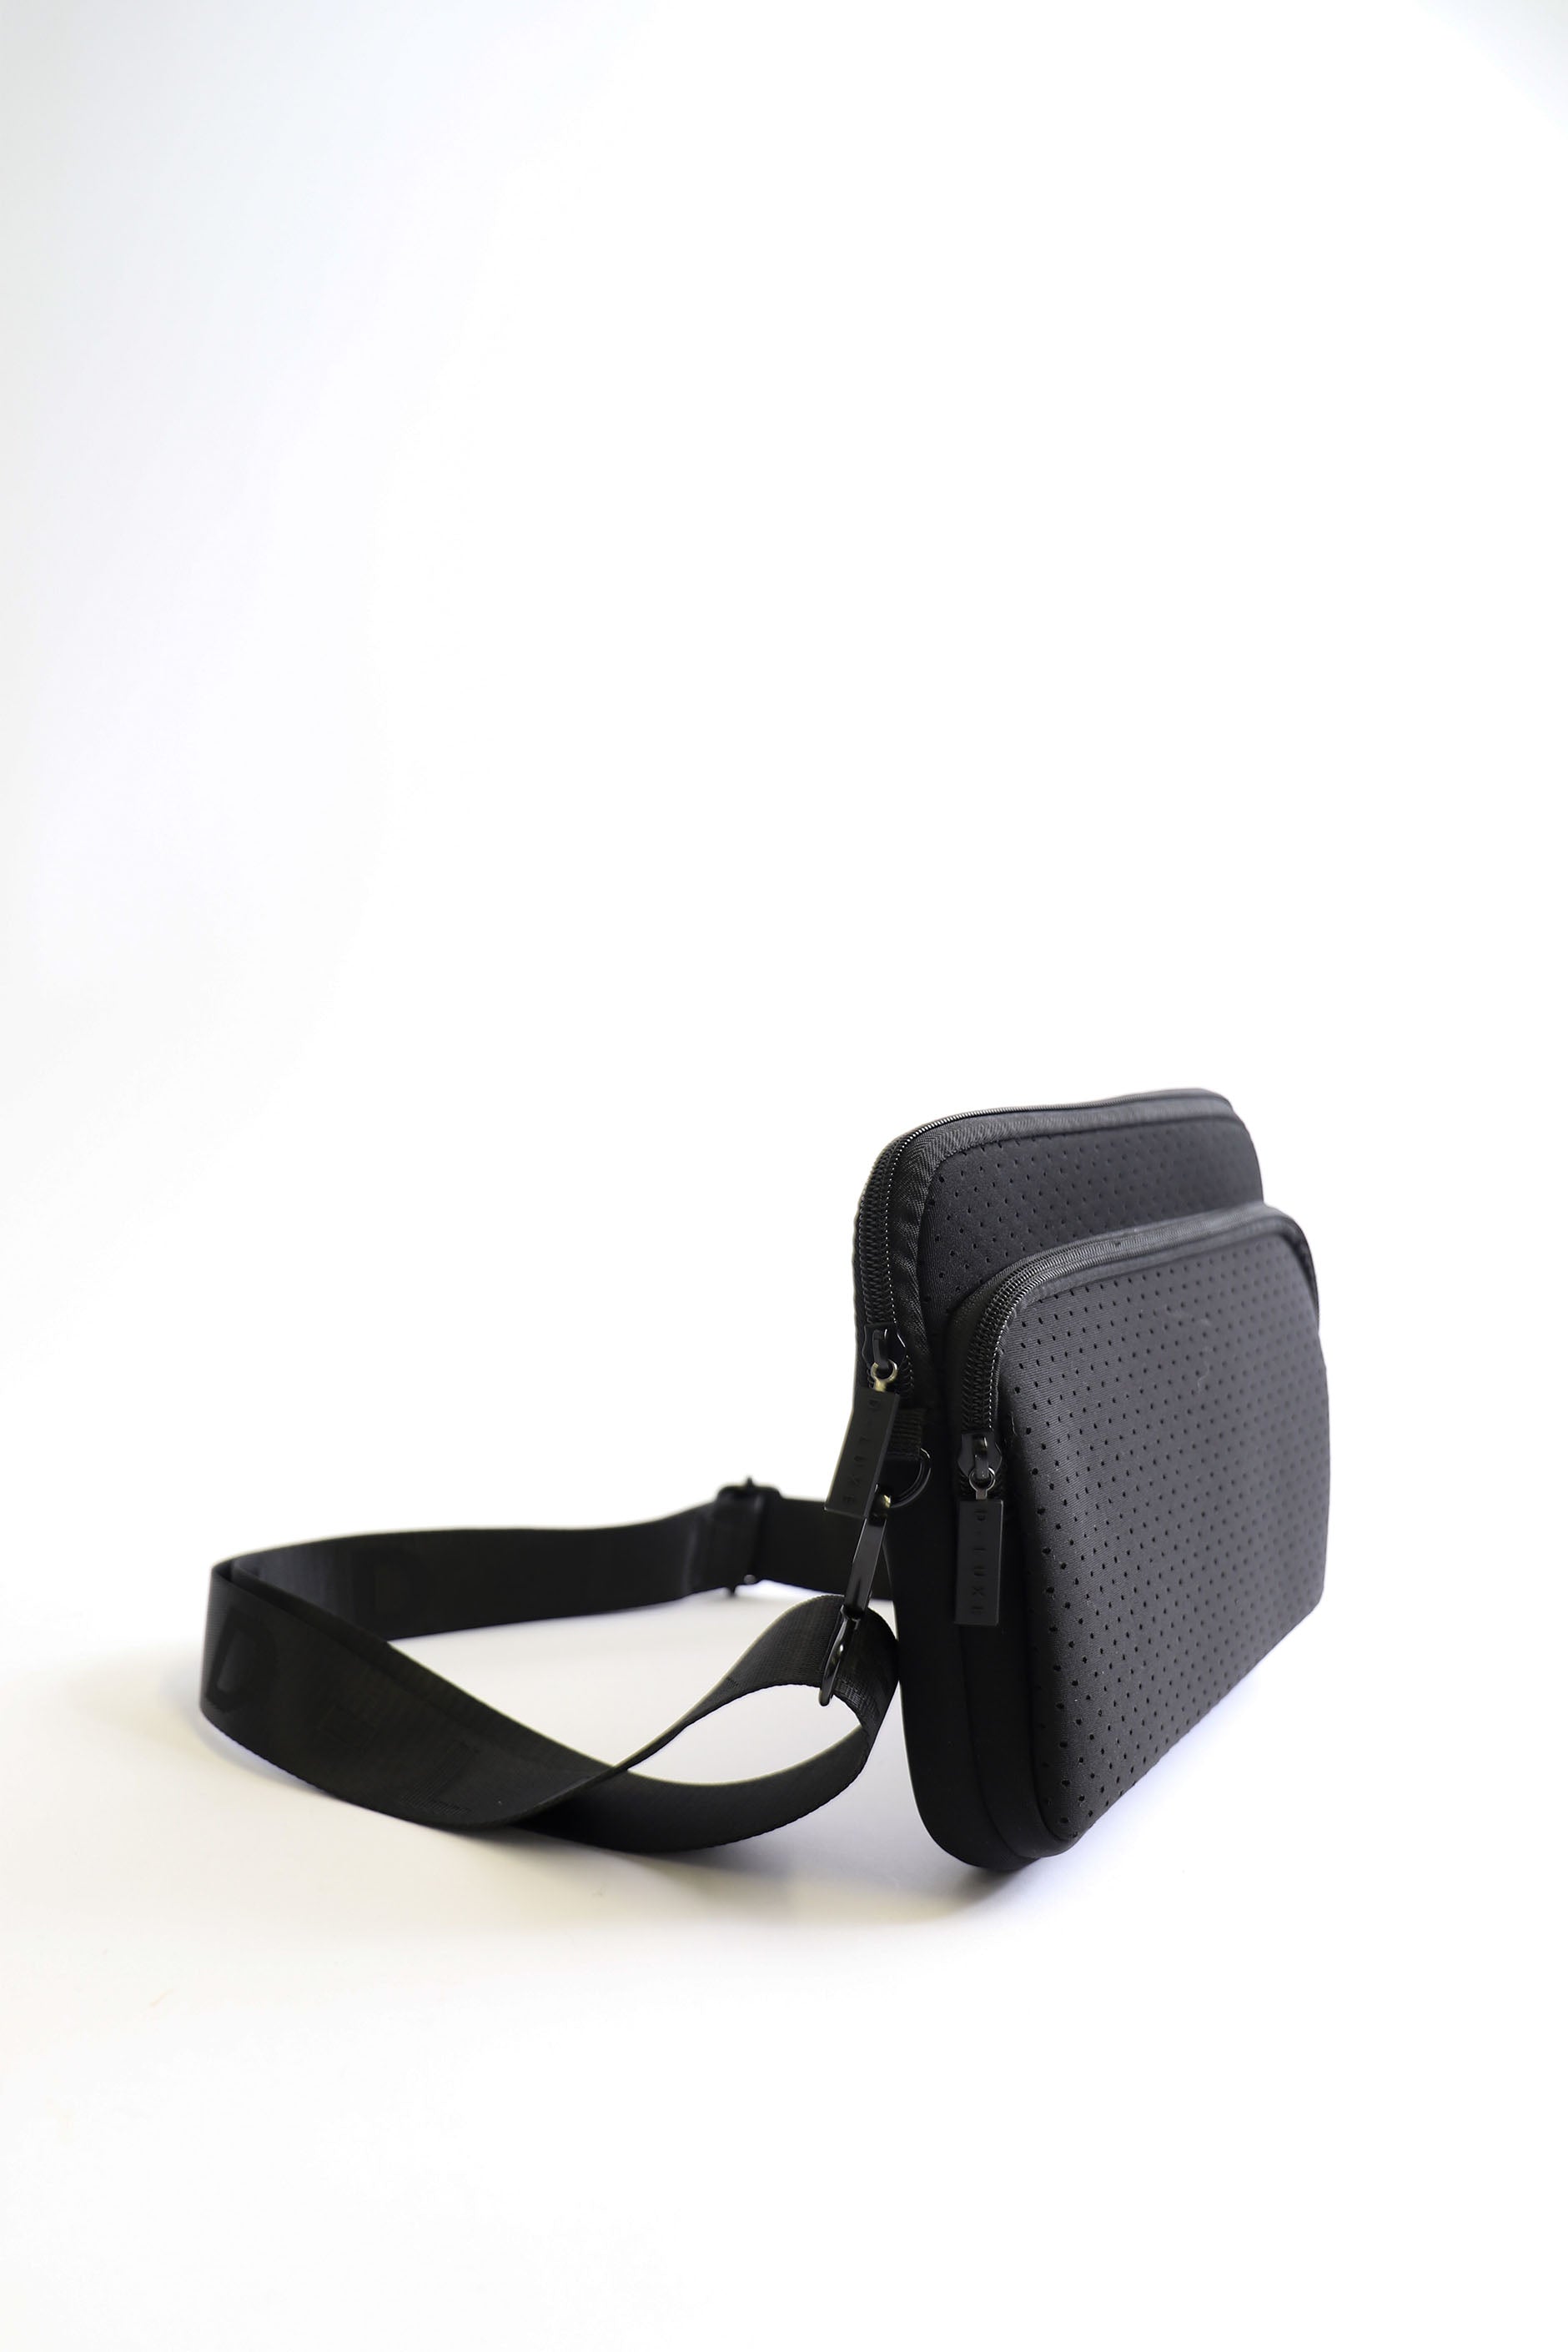 D-Luxe Piper Neoprene Bag — Black